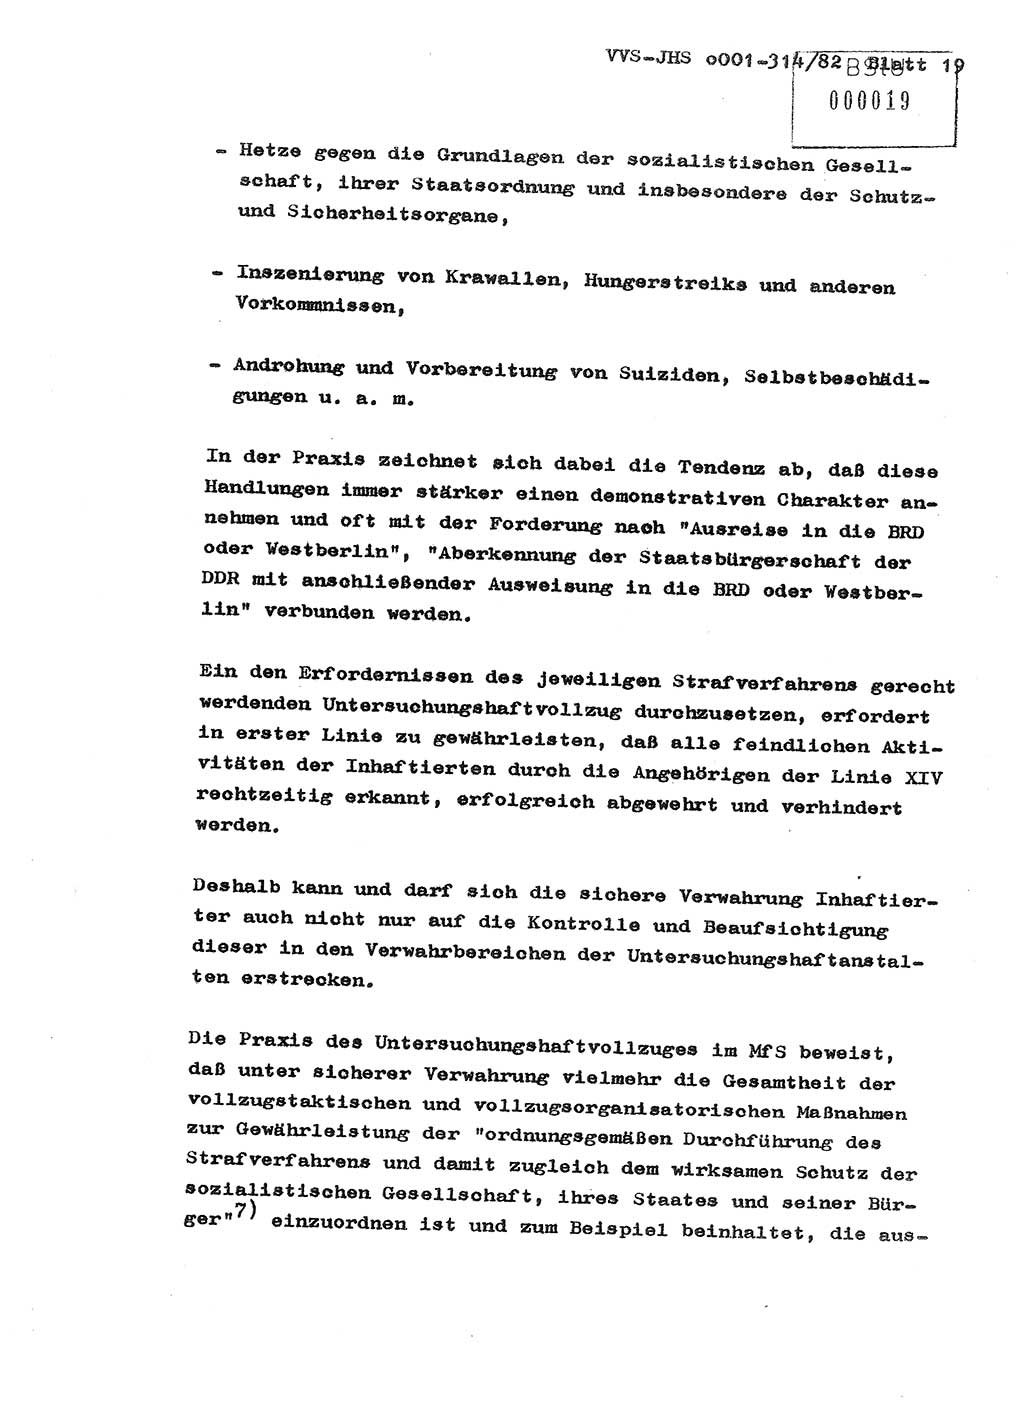 Diplomarbeit Hauptmann Wolfgang Schröder (Abt. ⅩⅣ), Ministerium für Staatssicherheit (MfS) [Deutsche Demokratische Republik (DDR)], Juristische Hochschule (JHS), Vertrauliche Verschlußsache (VVS) o001-314/82, Potsdam 1982, Seite 19 (Dipl.-Arb. MfS DDR JHS VVS o001-314/82 1982, S. 19)